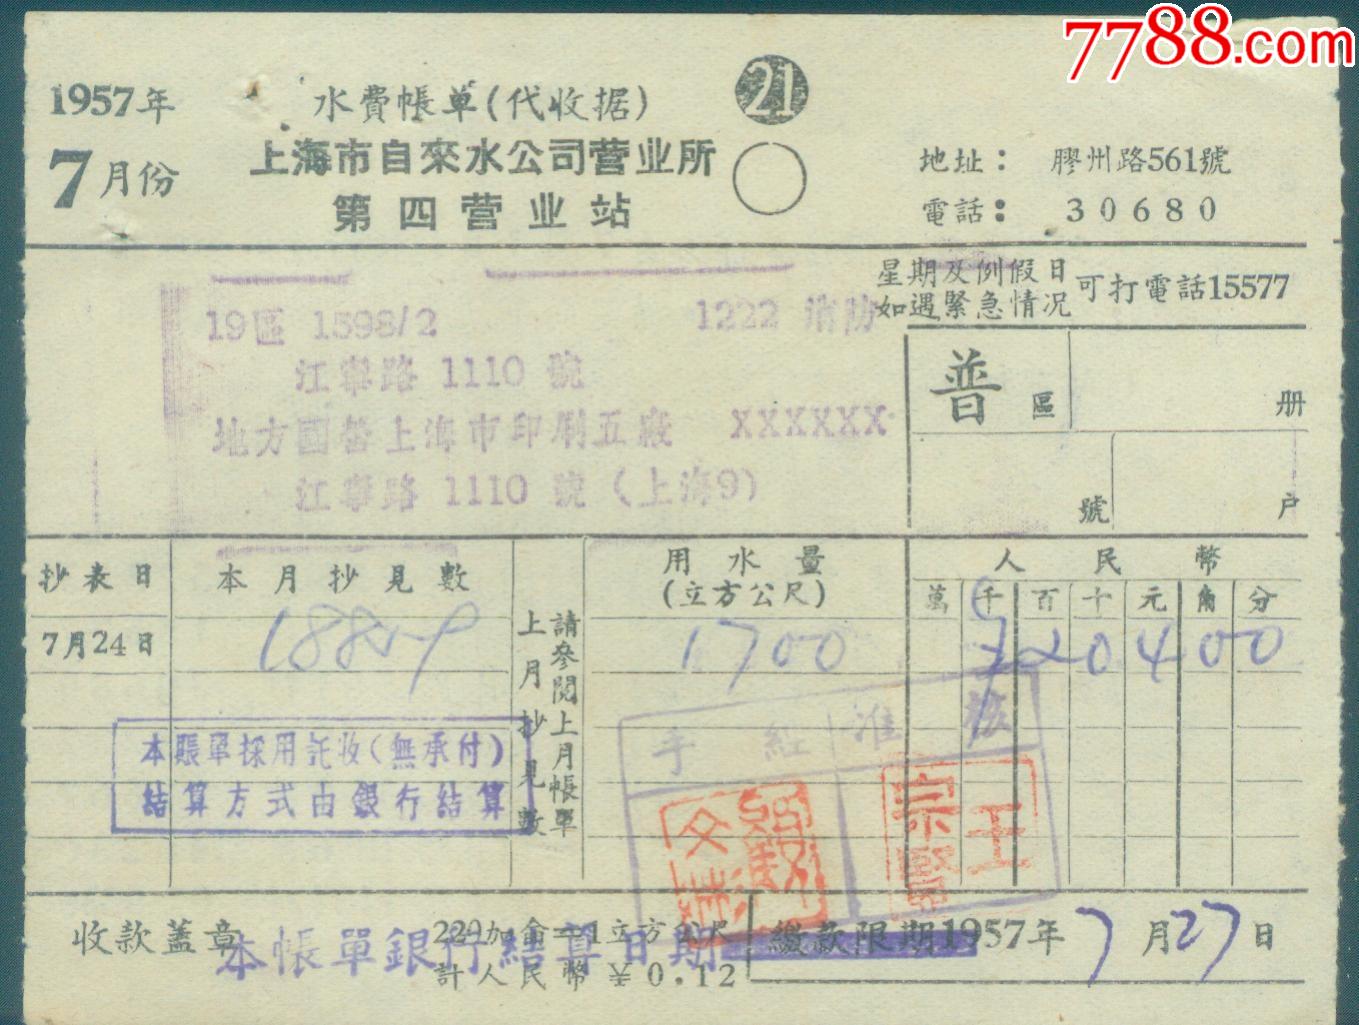 1957年7月上海市自来水公司营业所第一分所水费账单